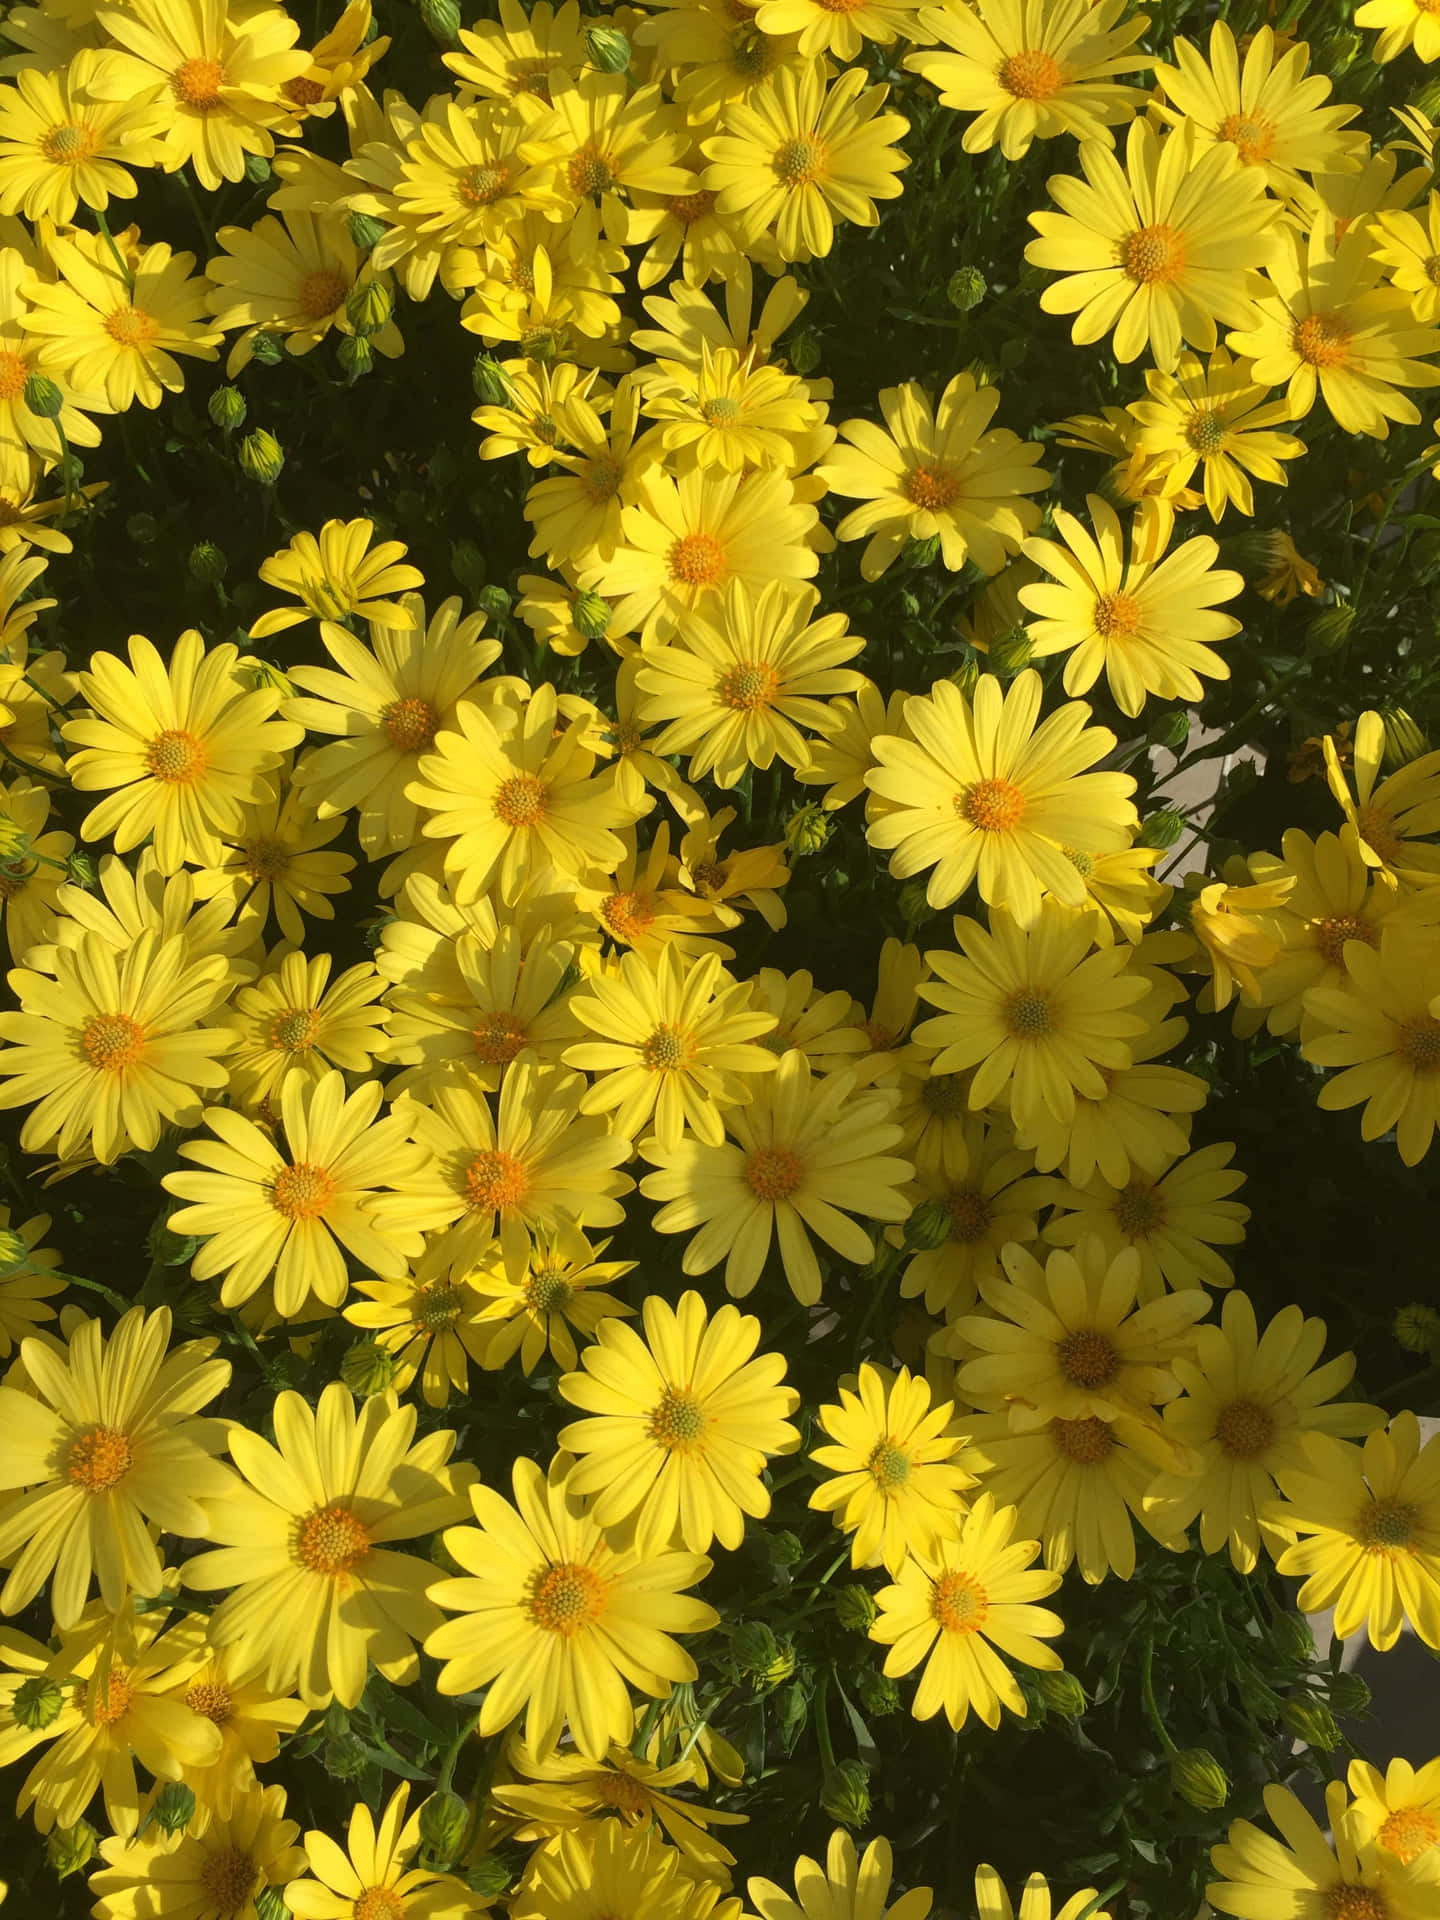 Caption: Vibrant Yellow Daisy Blossom Wallpaper